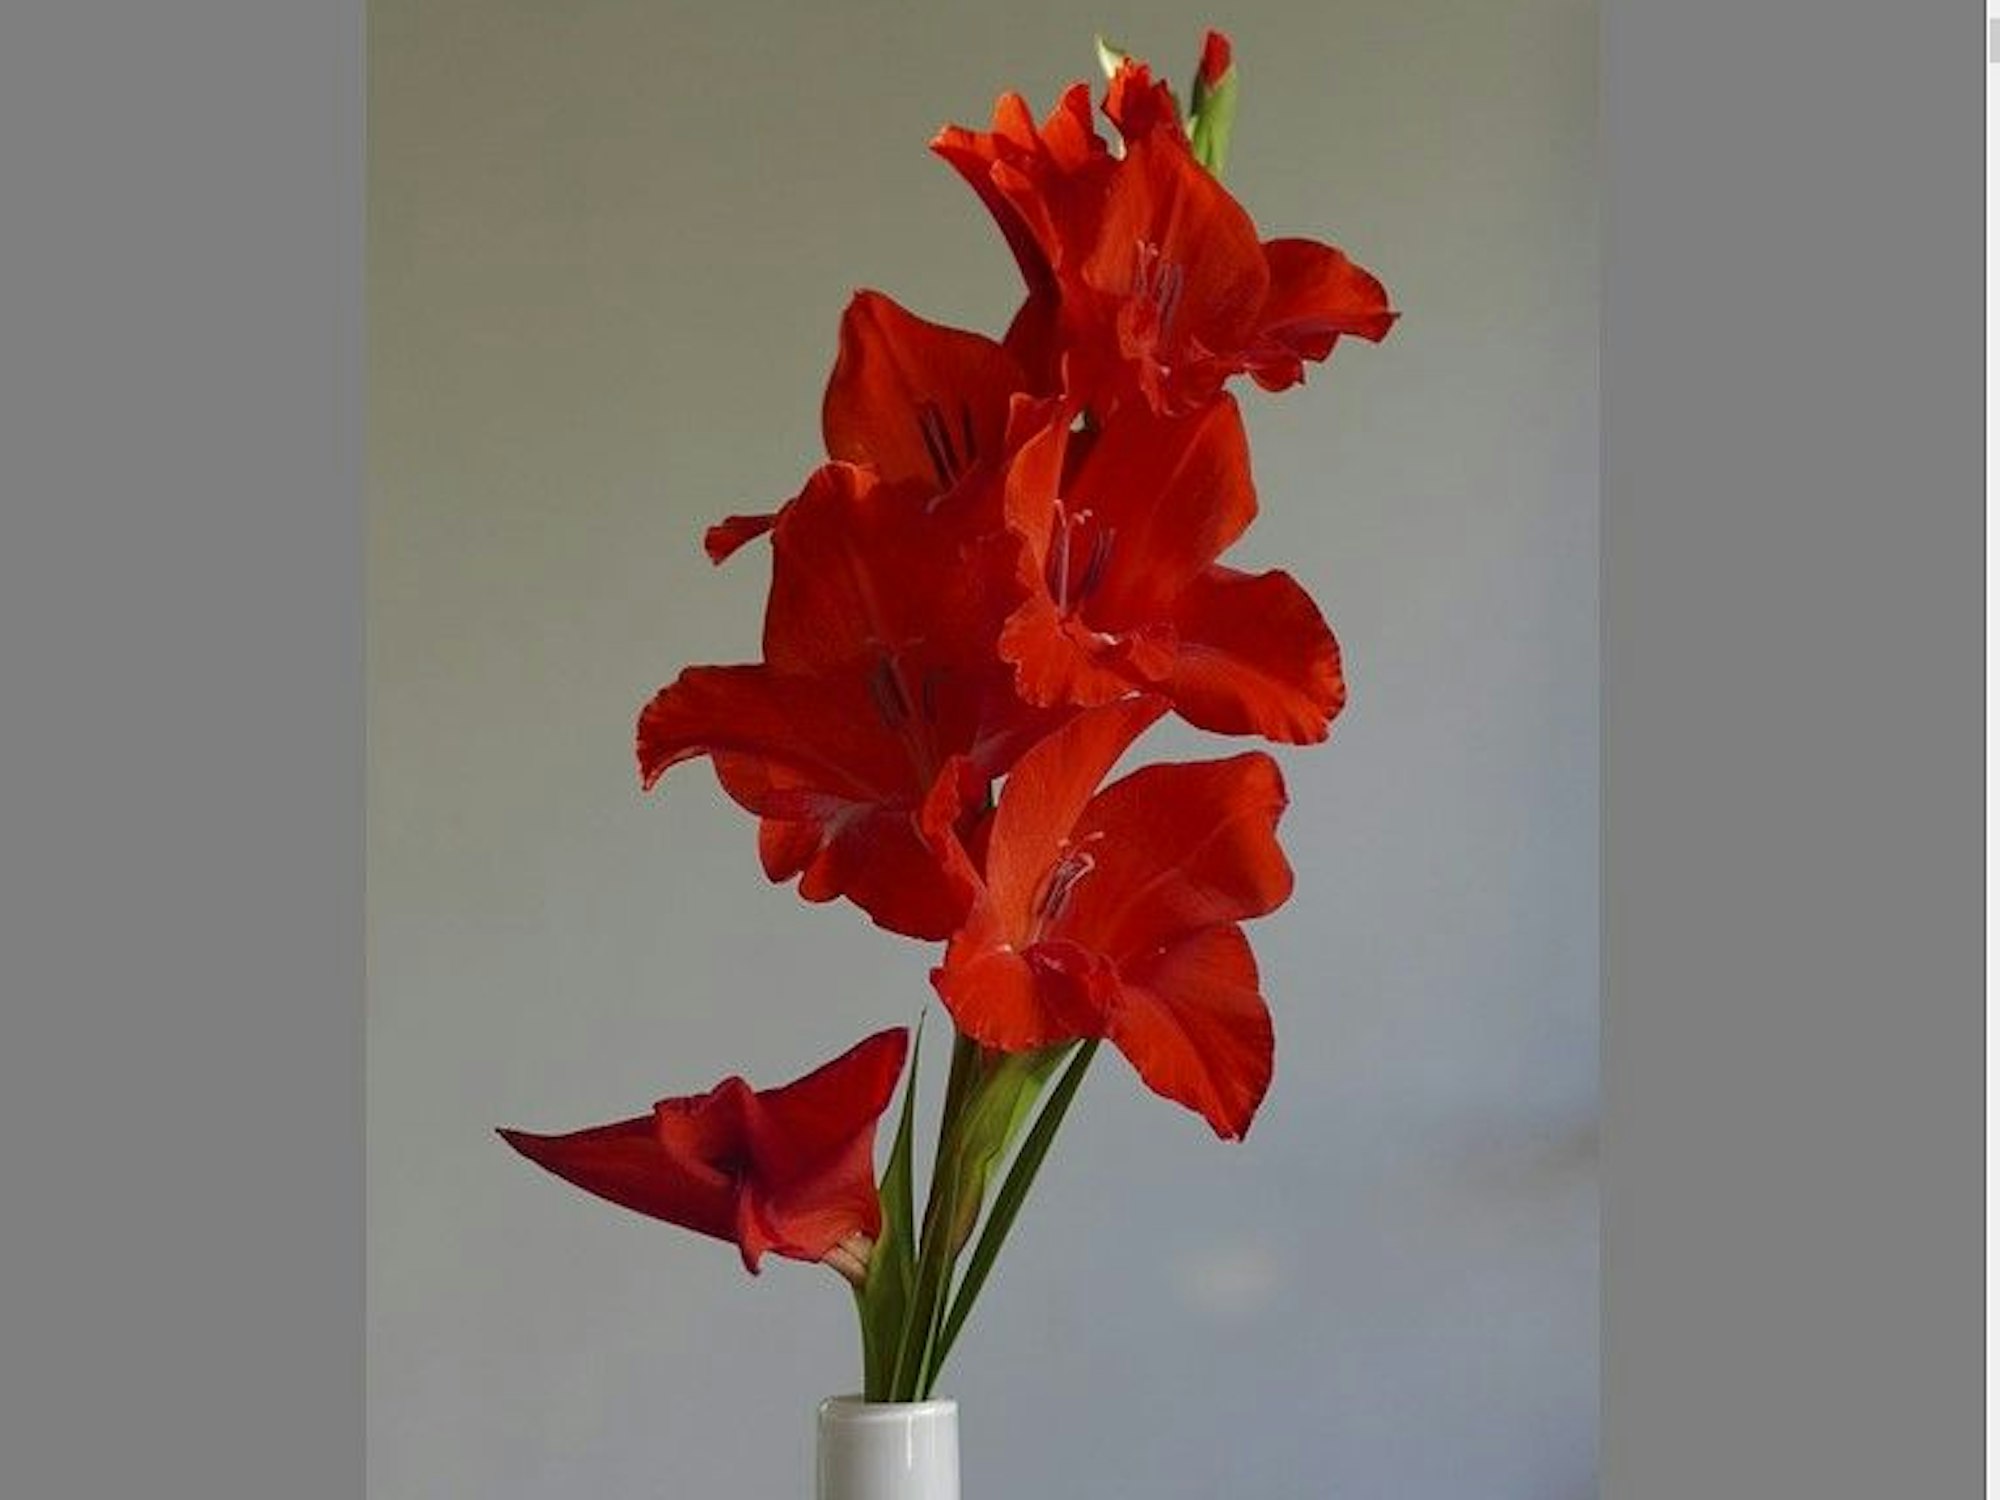 Eine rote Gladiole in einer Vase